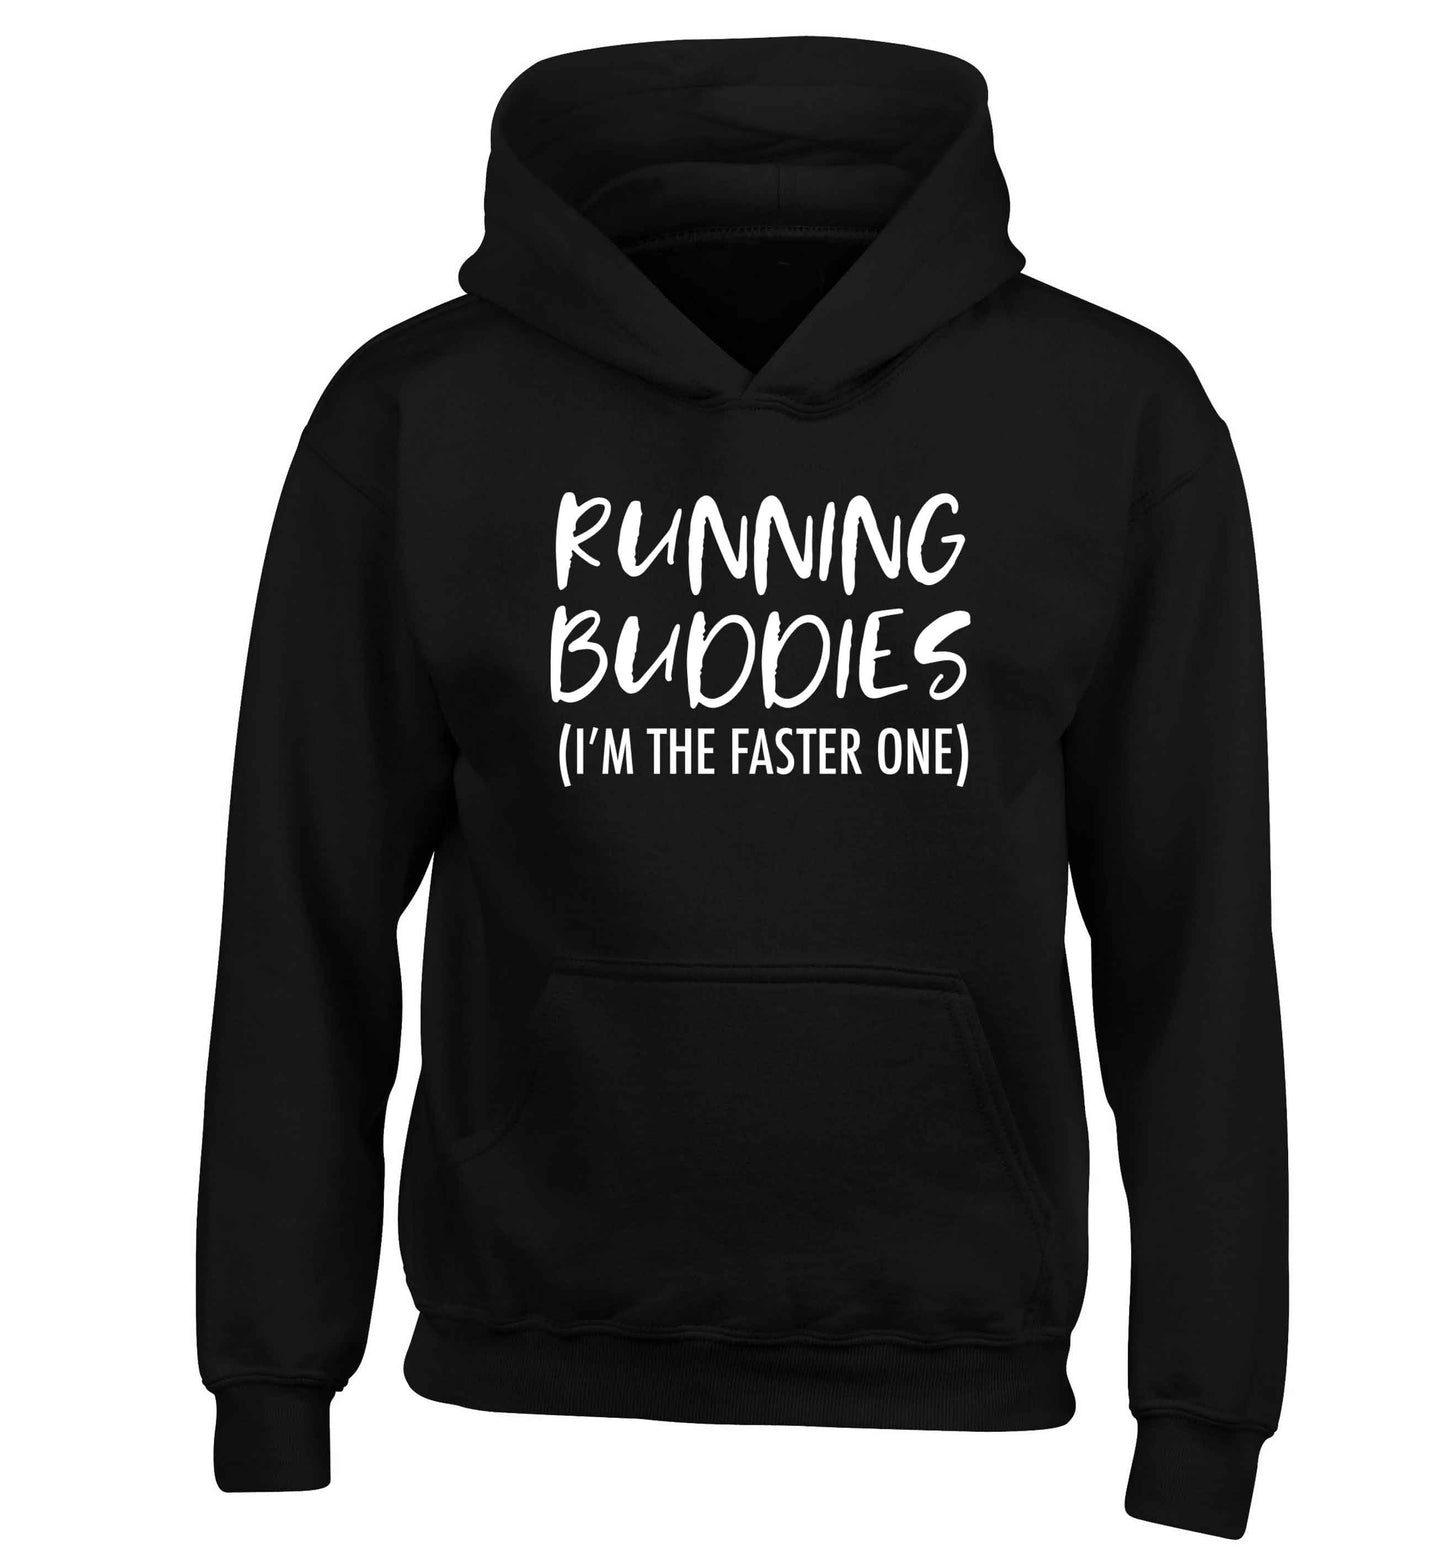 Running buddies (I'm the faster one) children's black hoodie 12-13 Years